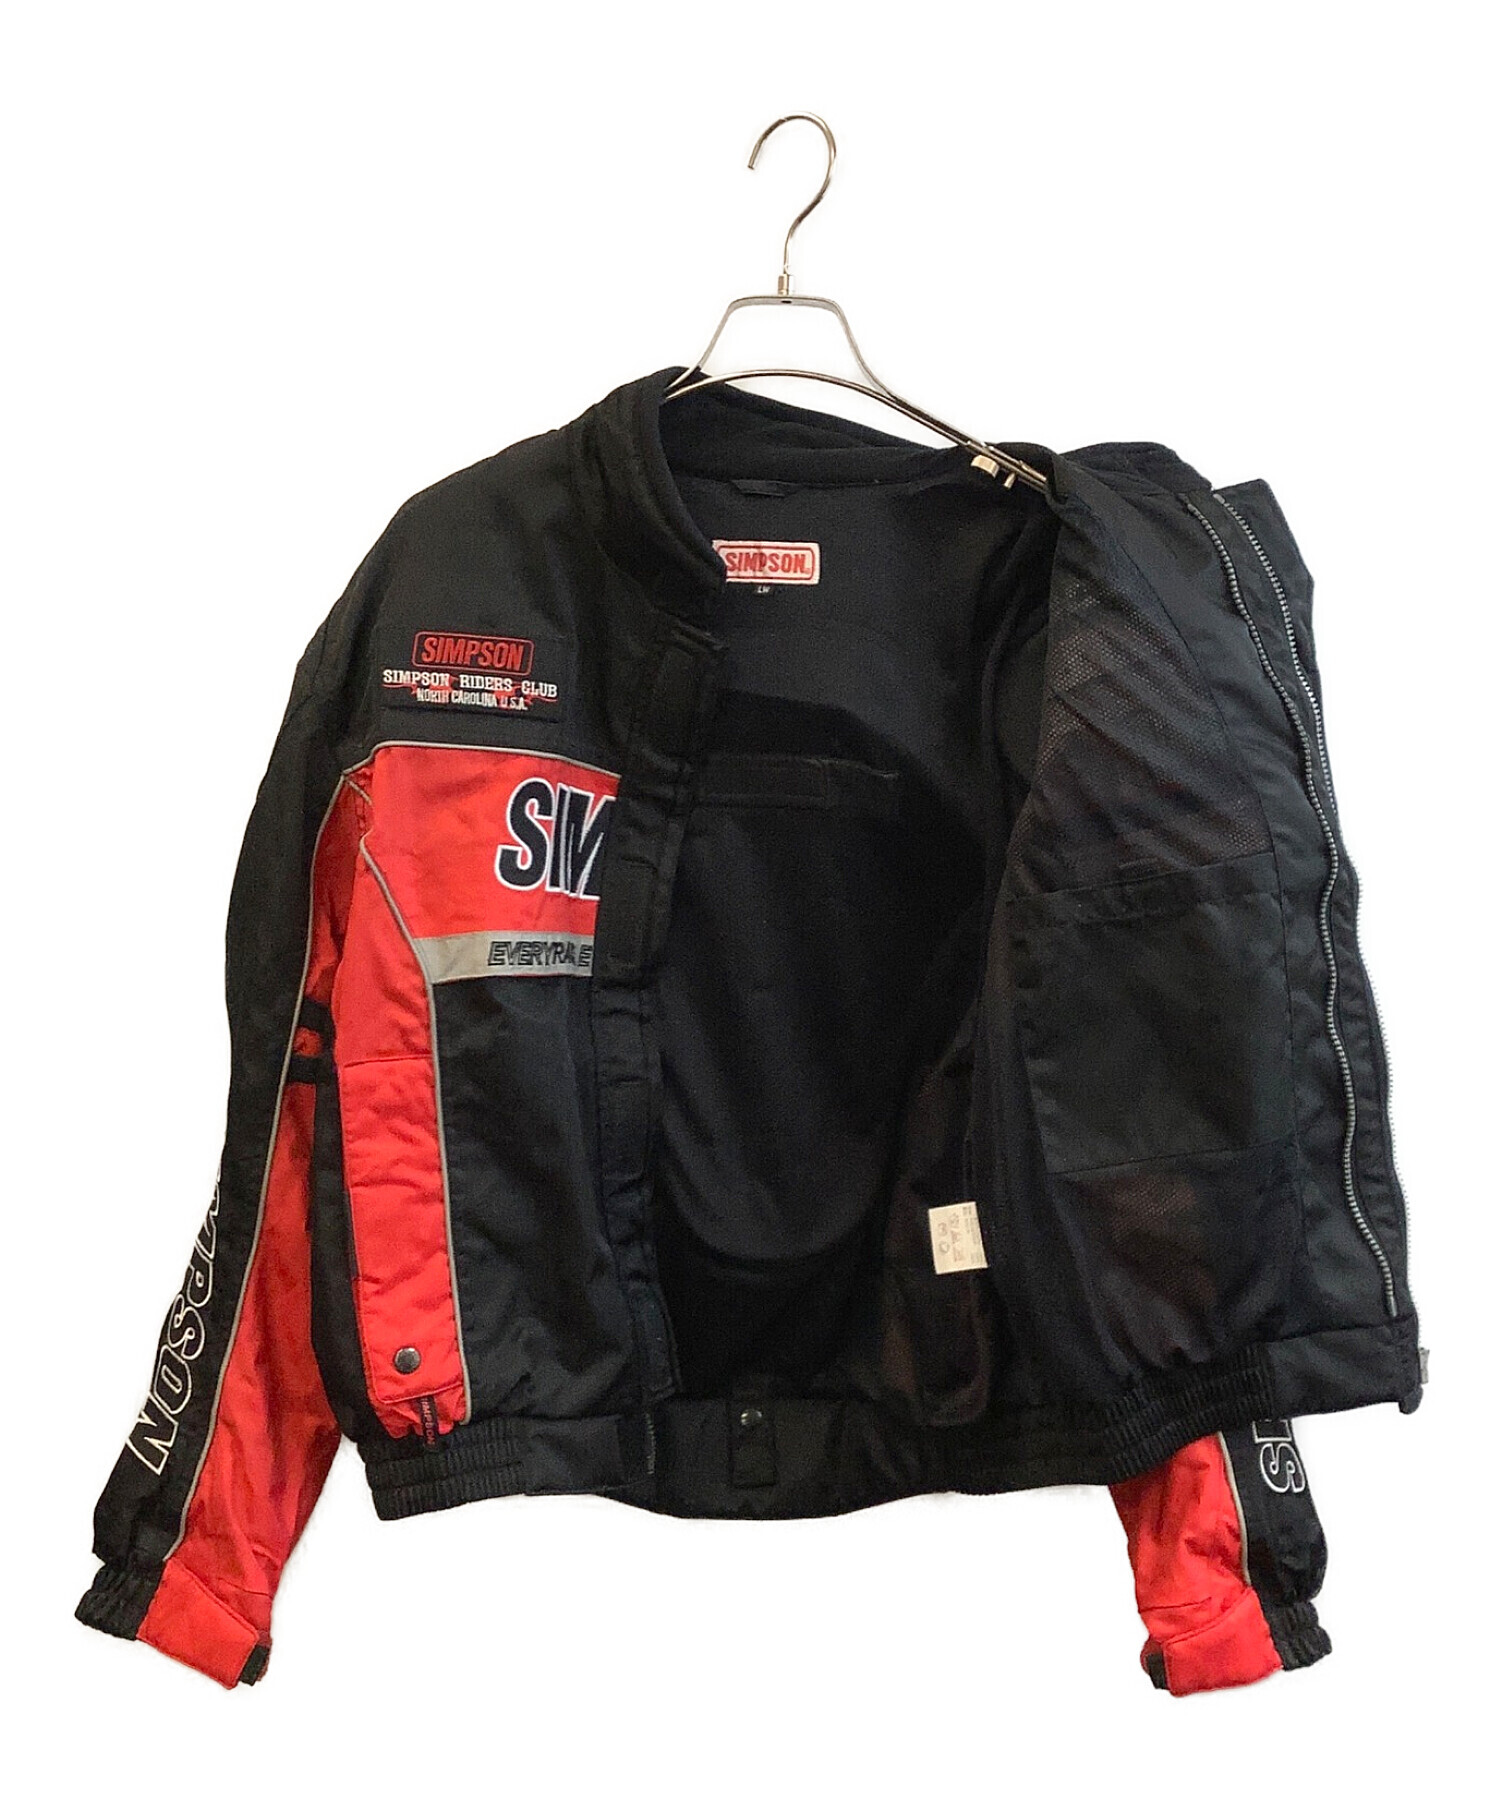 SIMPSON (シンプソン) バイク用ライディングジャケット レッド×ブラック サイズ:L